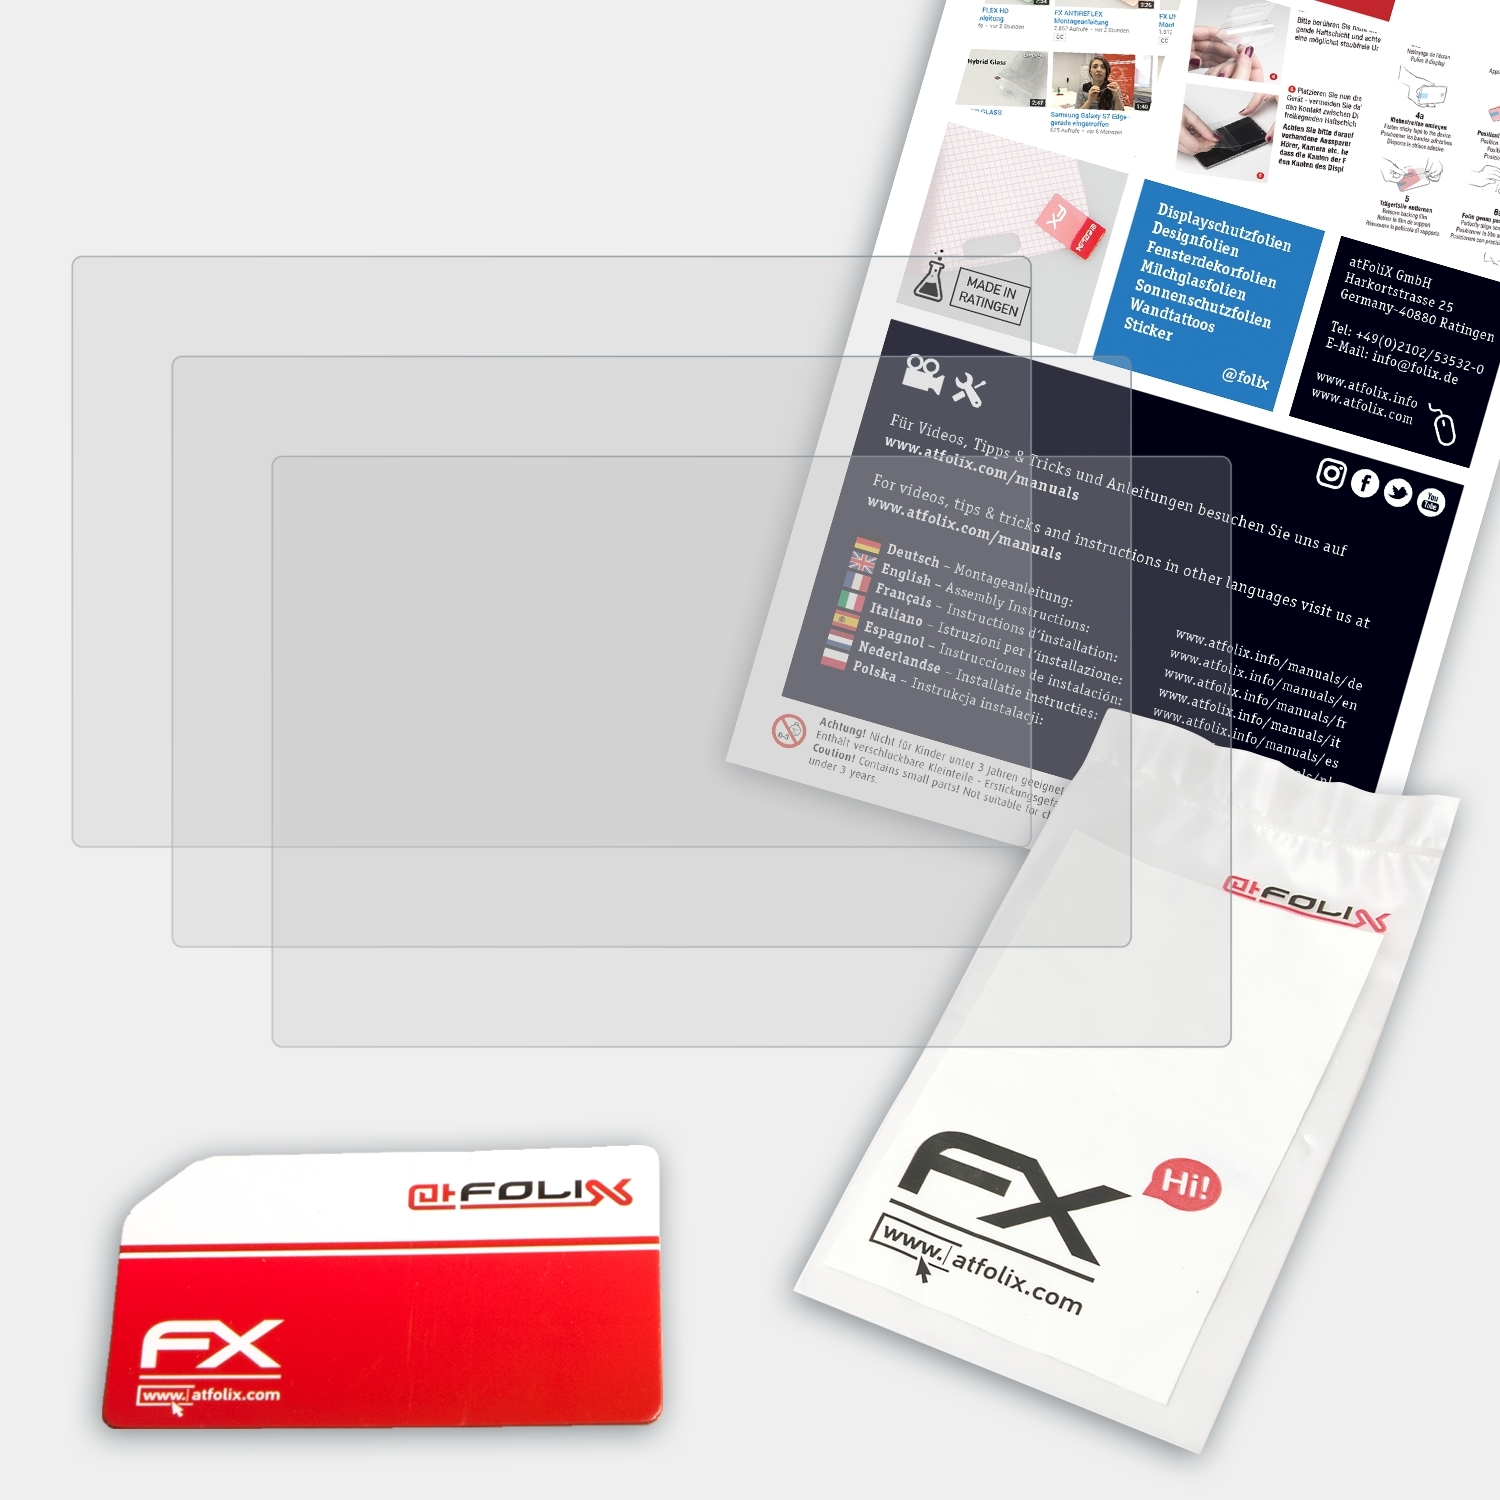 ATFOLIX 3x Plus FX-Antireflex (7 GPSMap Garmin Displayschutz(für 722xs Inch))